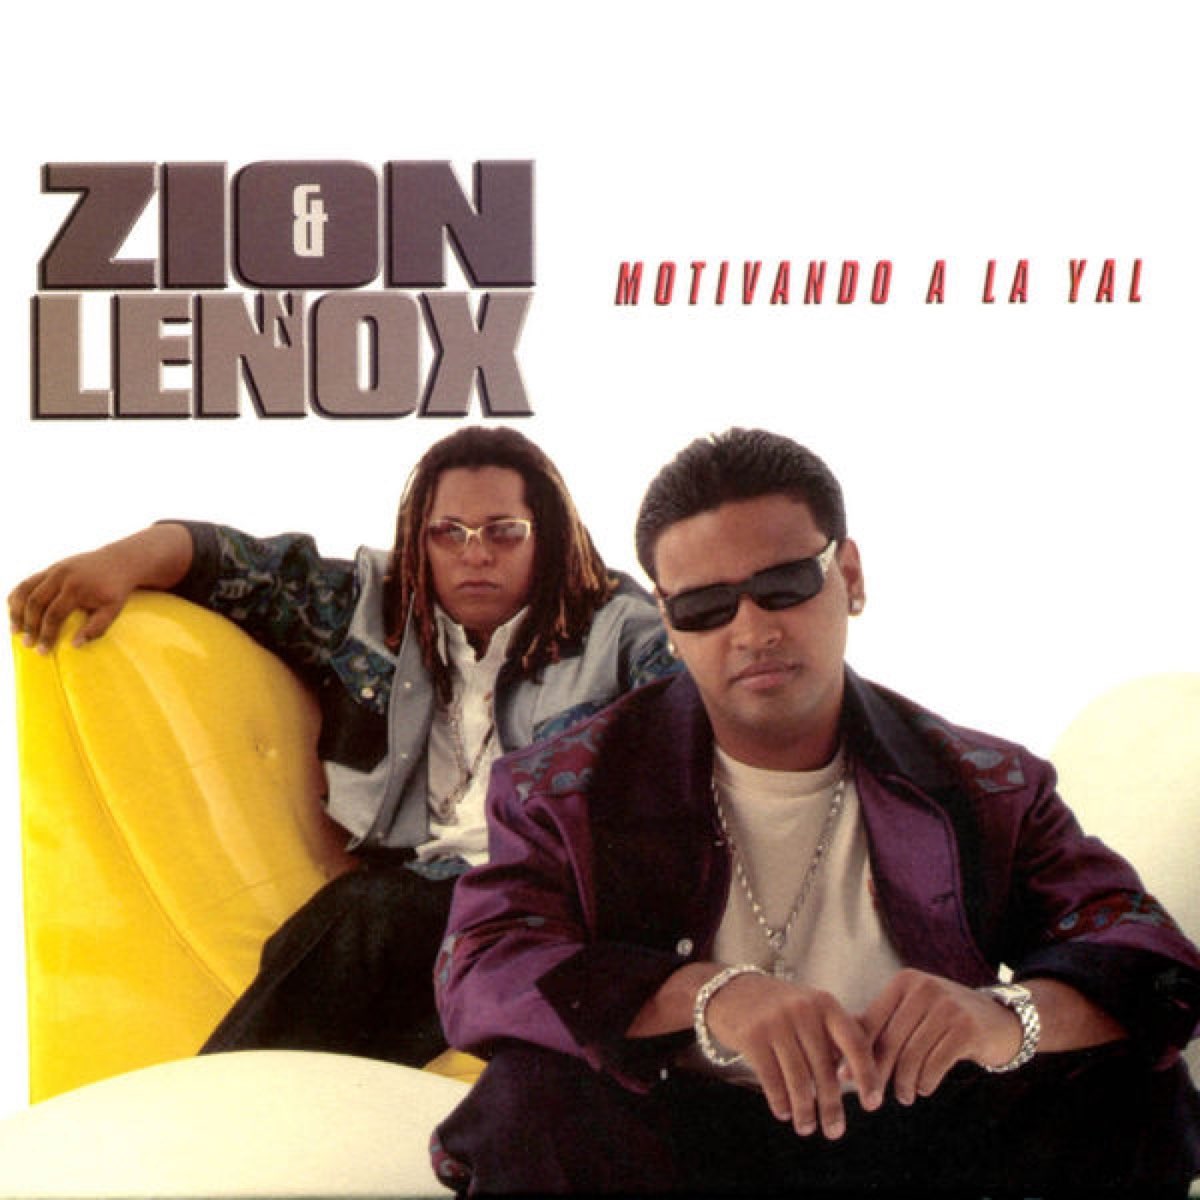 Yo voy daddy. Zion & Lennox. Motivando a la Yal Zion y Lennox. Zion y Lennox песни. Lennox певец латиноамериканский.